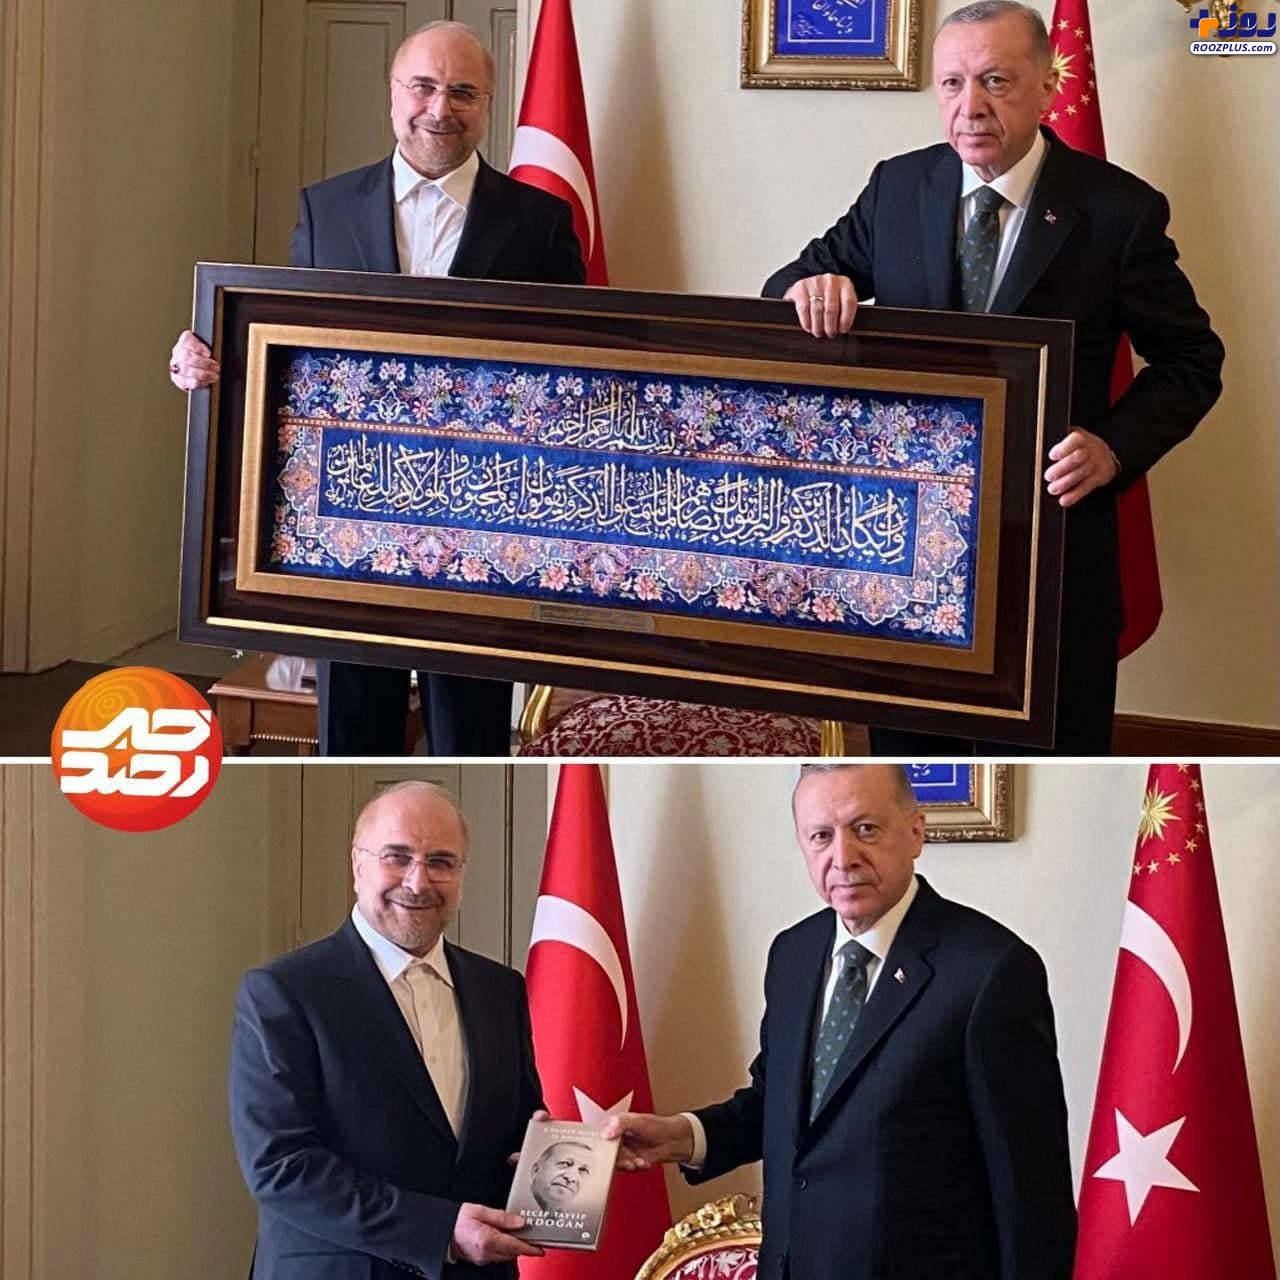 هدیه قالیباف و اردوغان به یکدیگر +عکس